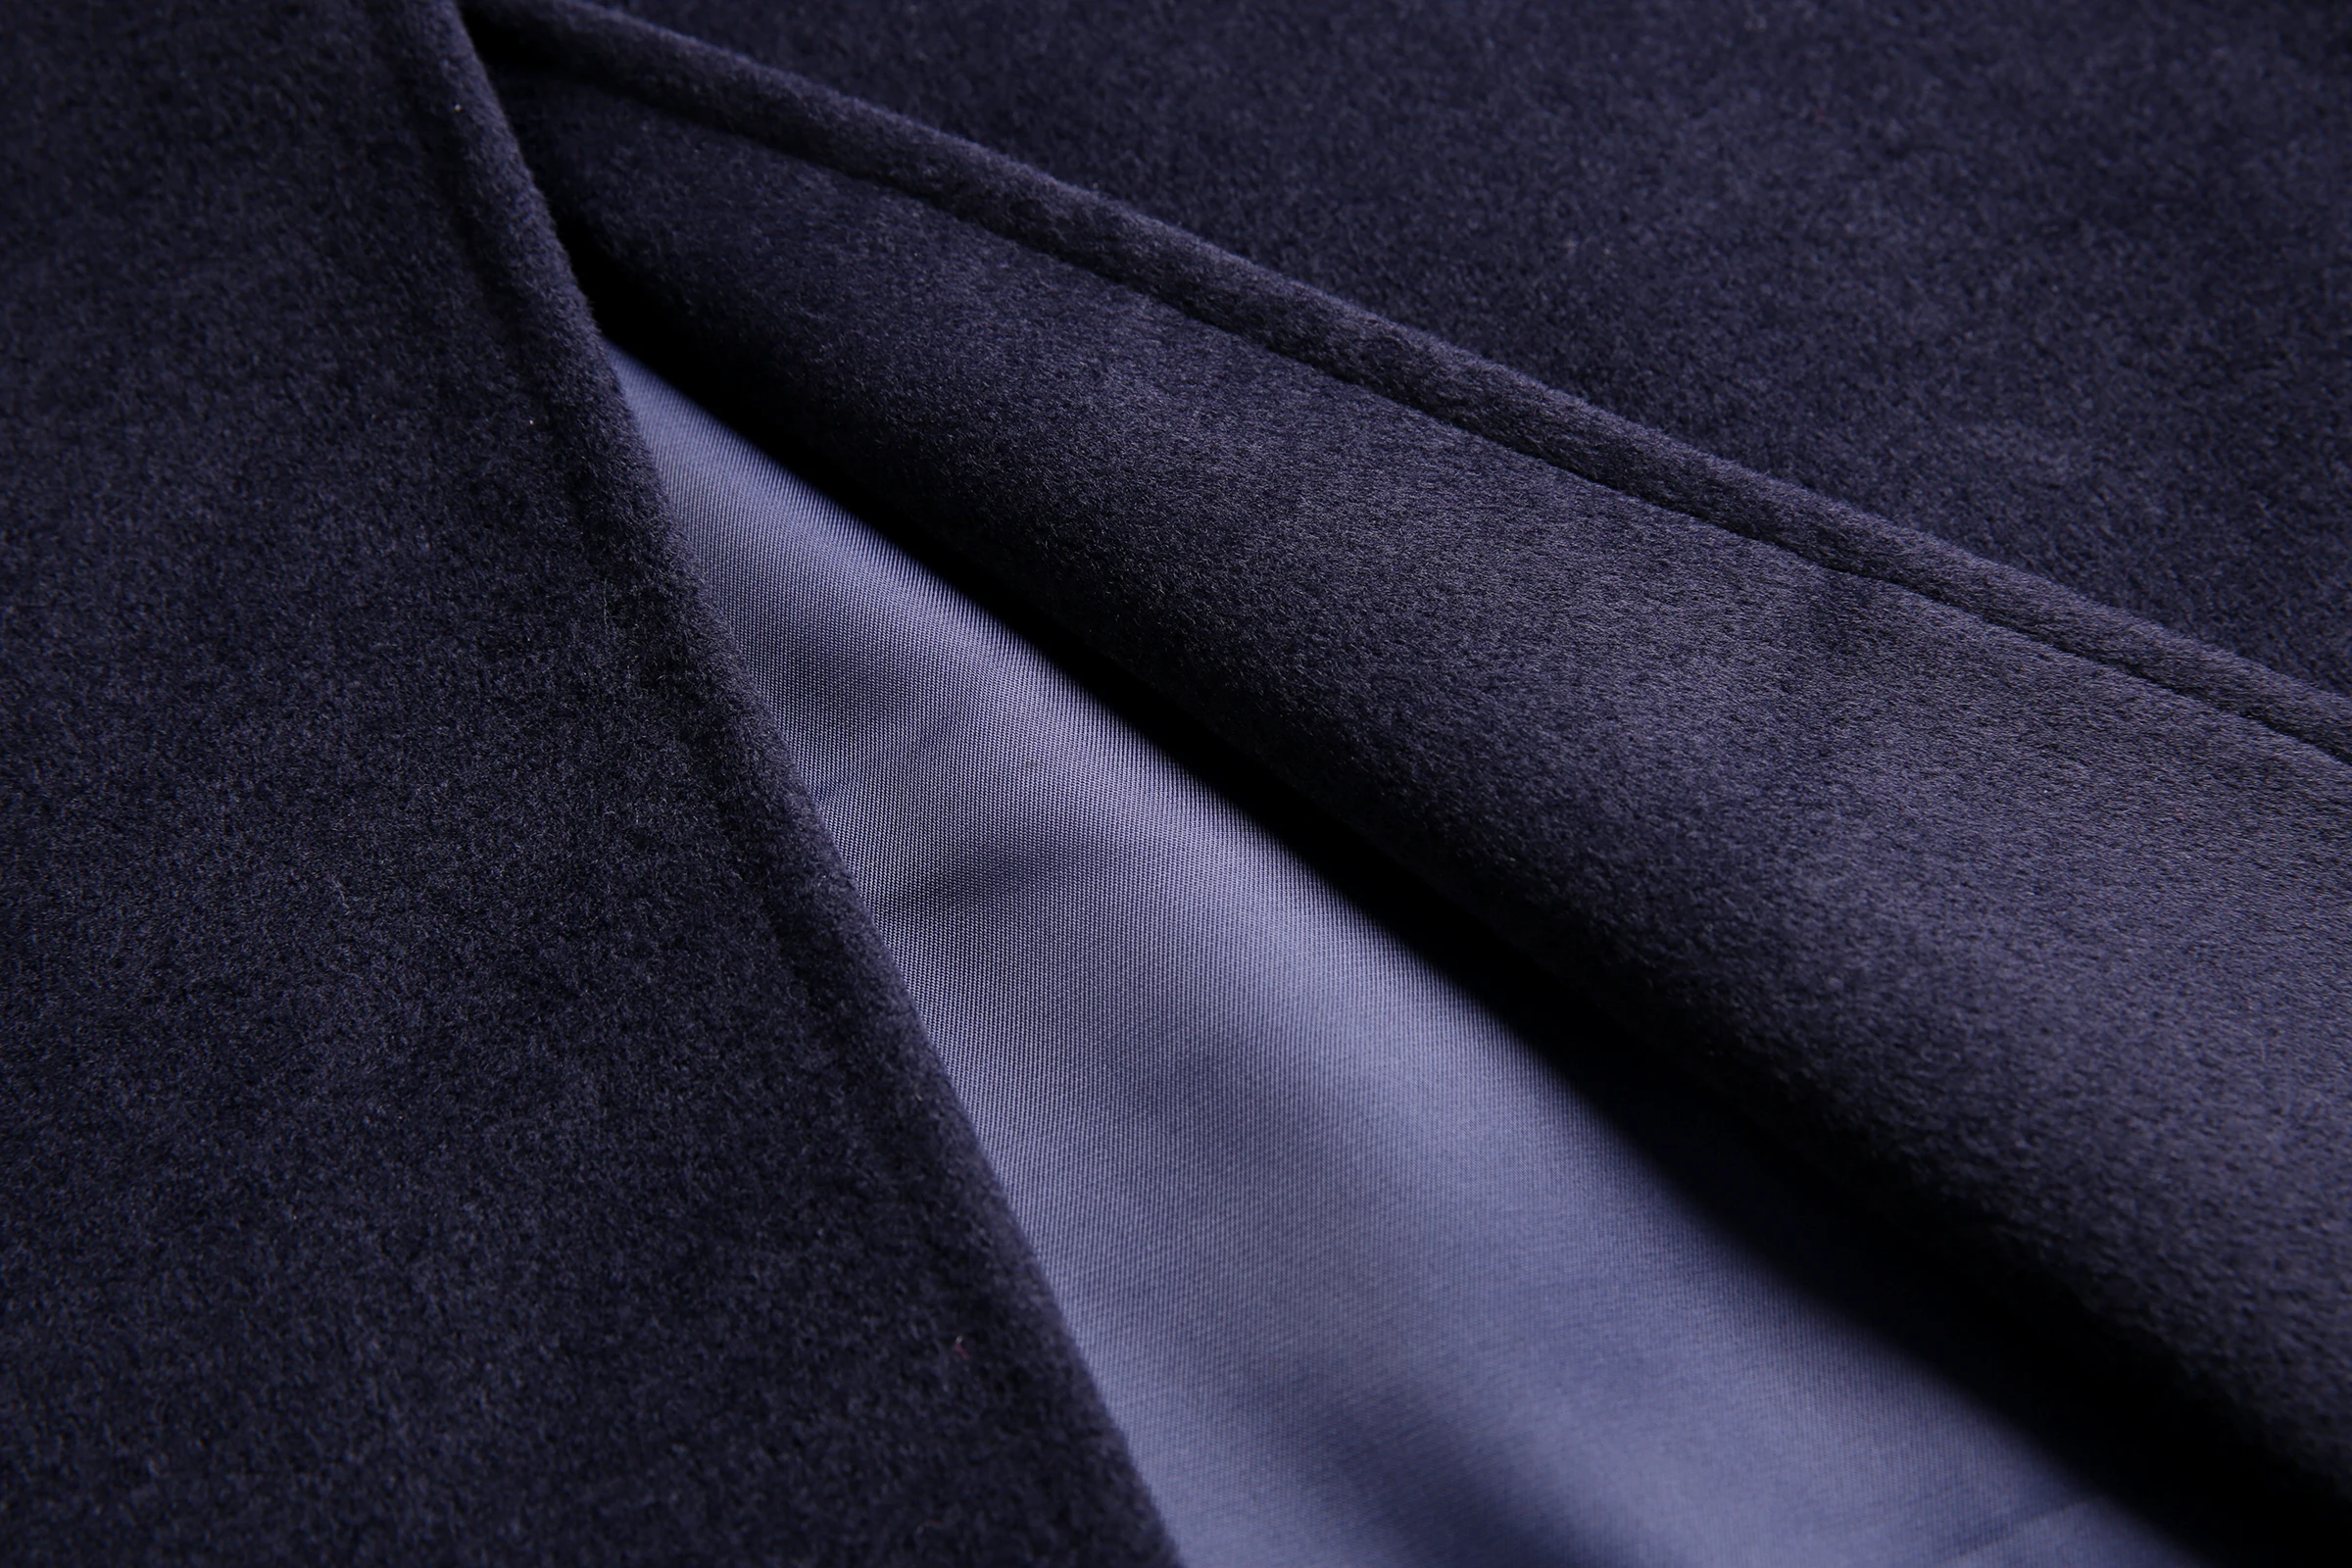 Женское длинное шерстяное пальто ZADORIN элегантное приталенное подиумное с